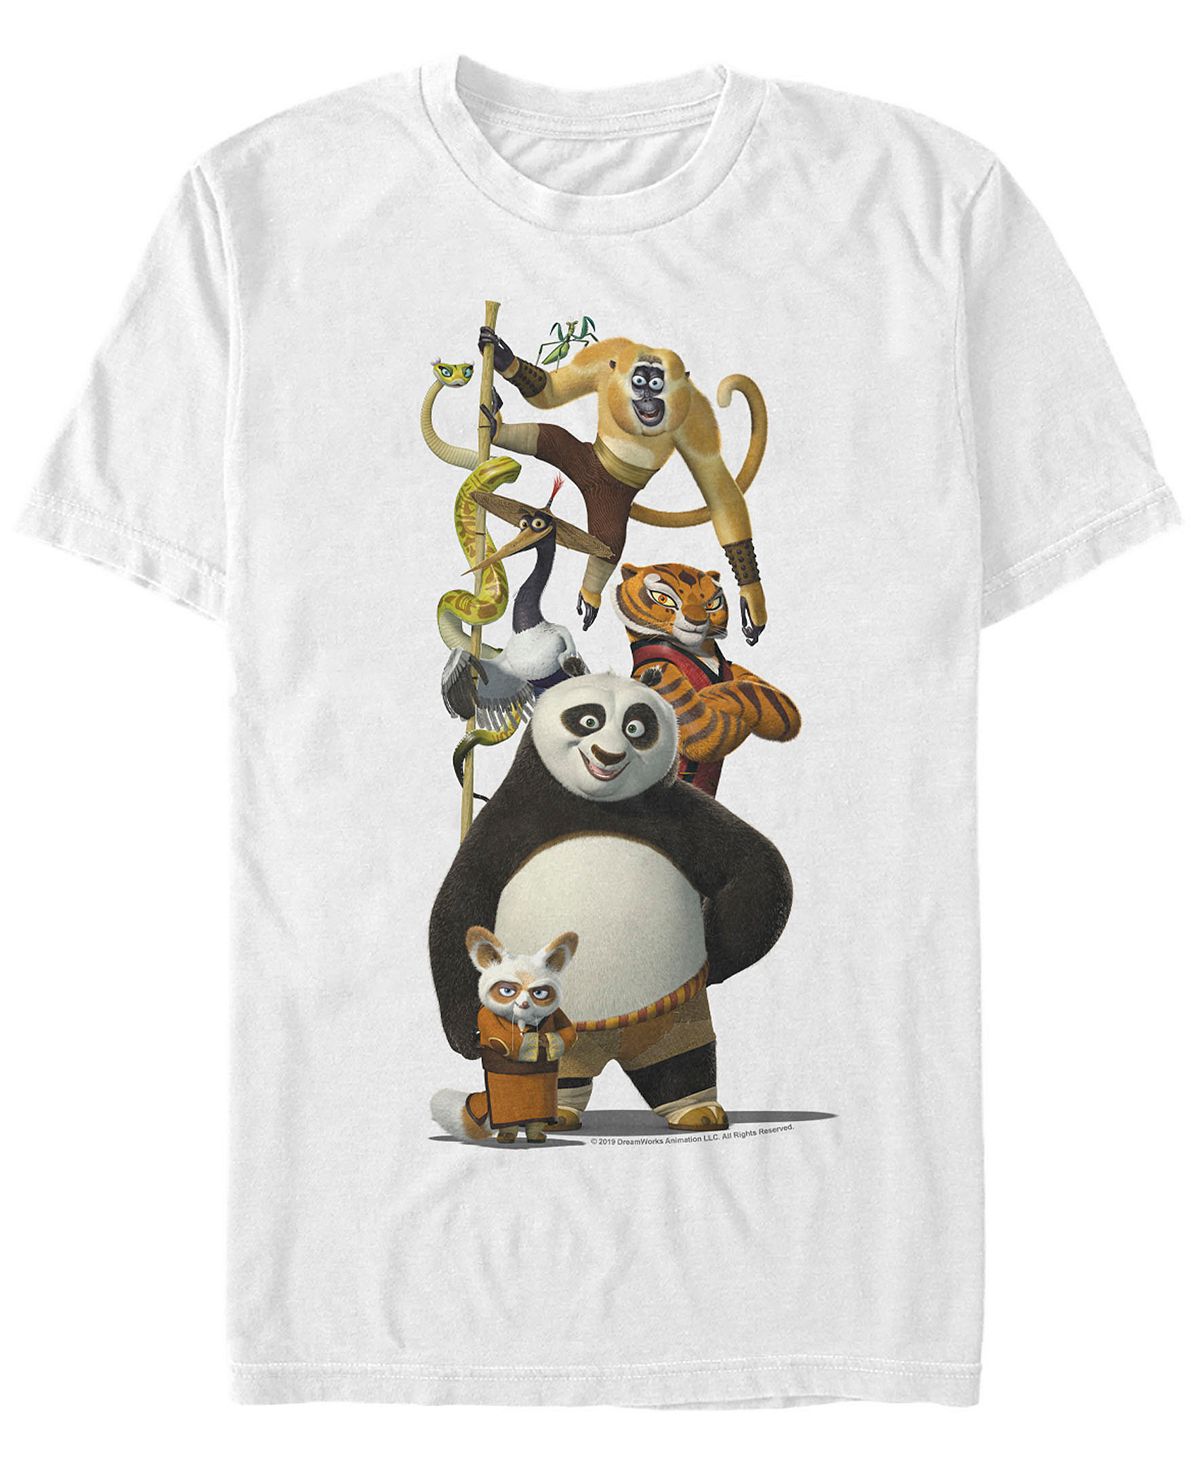 Мужская футболка с короткими рукавами по и друзья кунг-фу панда Fifth Sun, белый кунг фу панда 3 blu ray